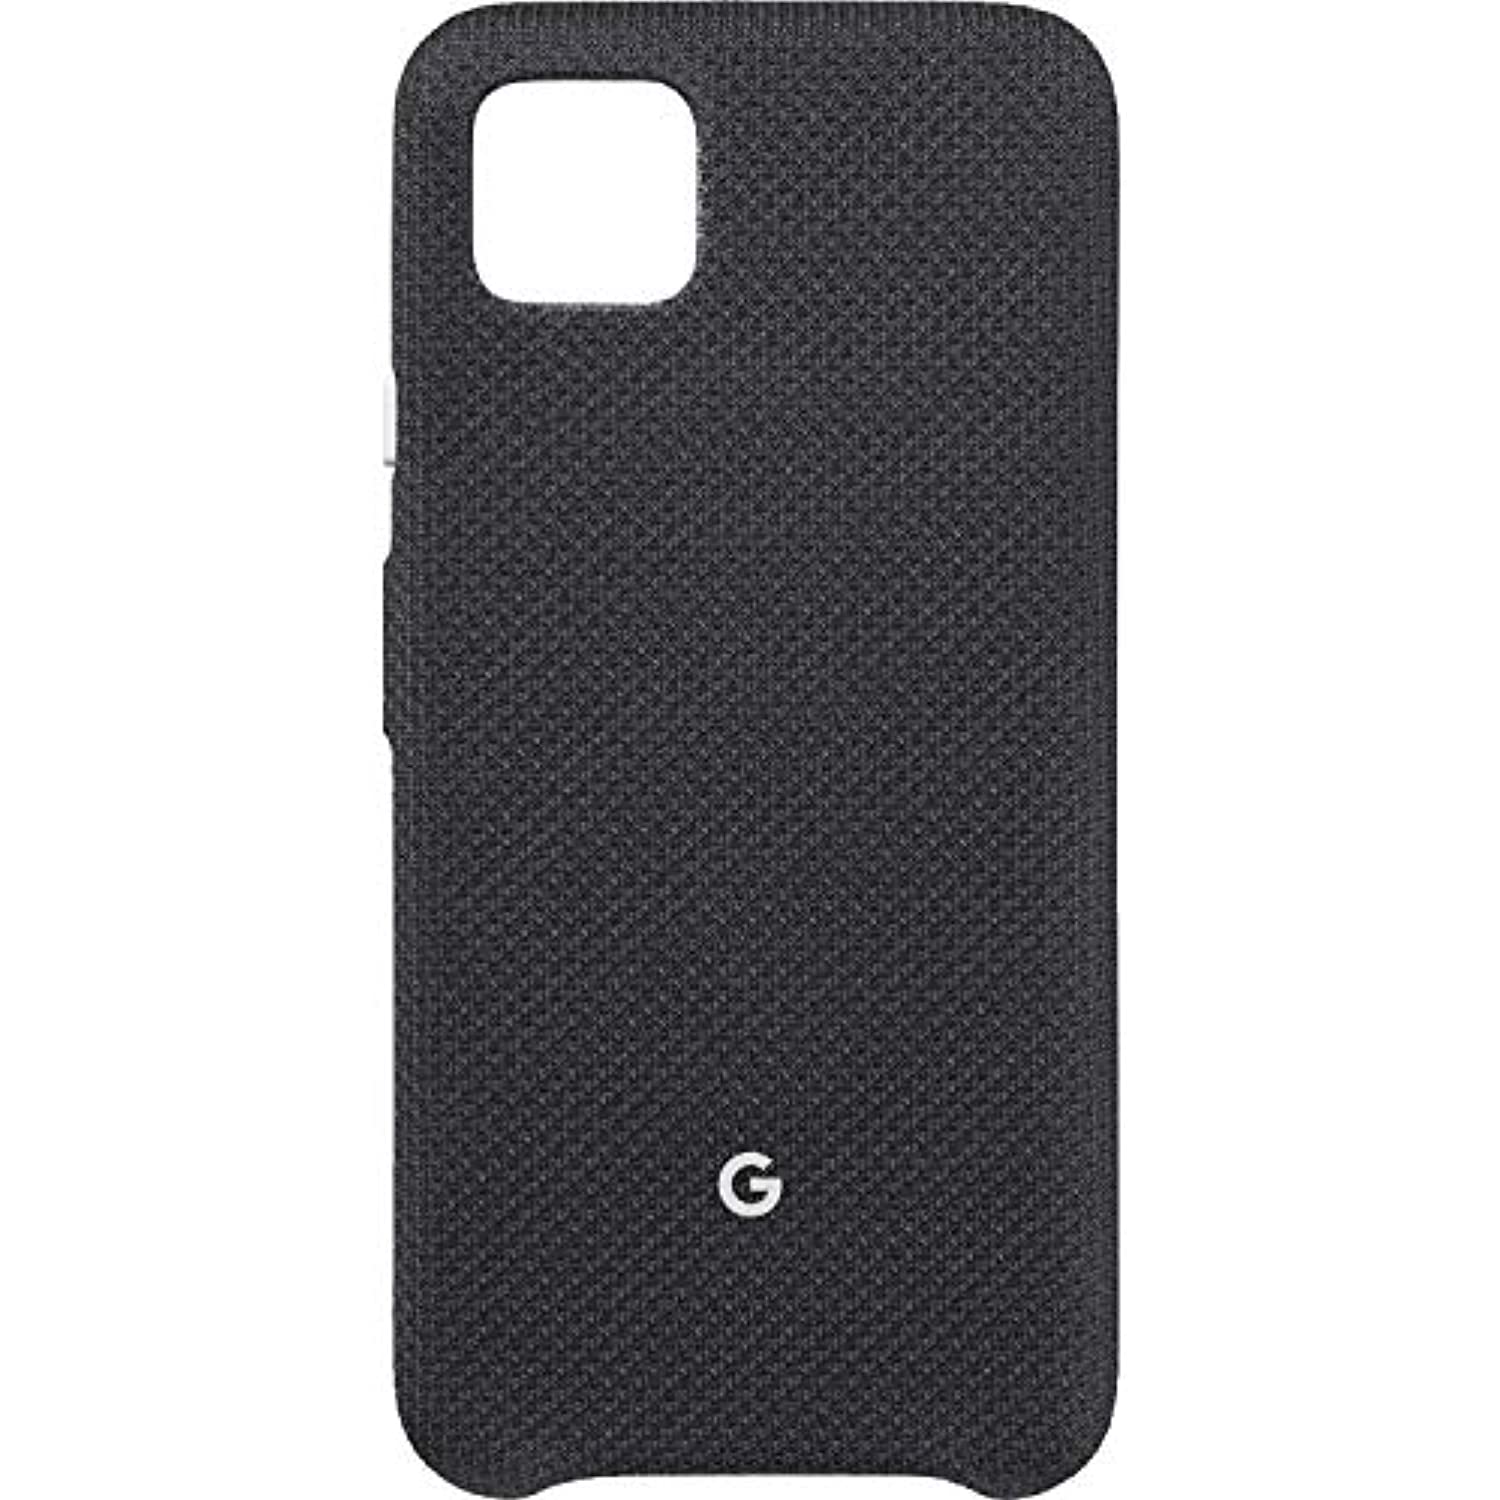 Google - GA01280 Case for Google Pixel 4 - Just Black